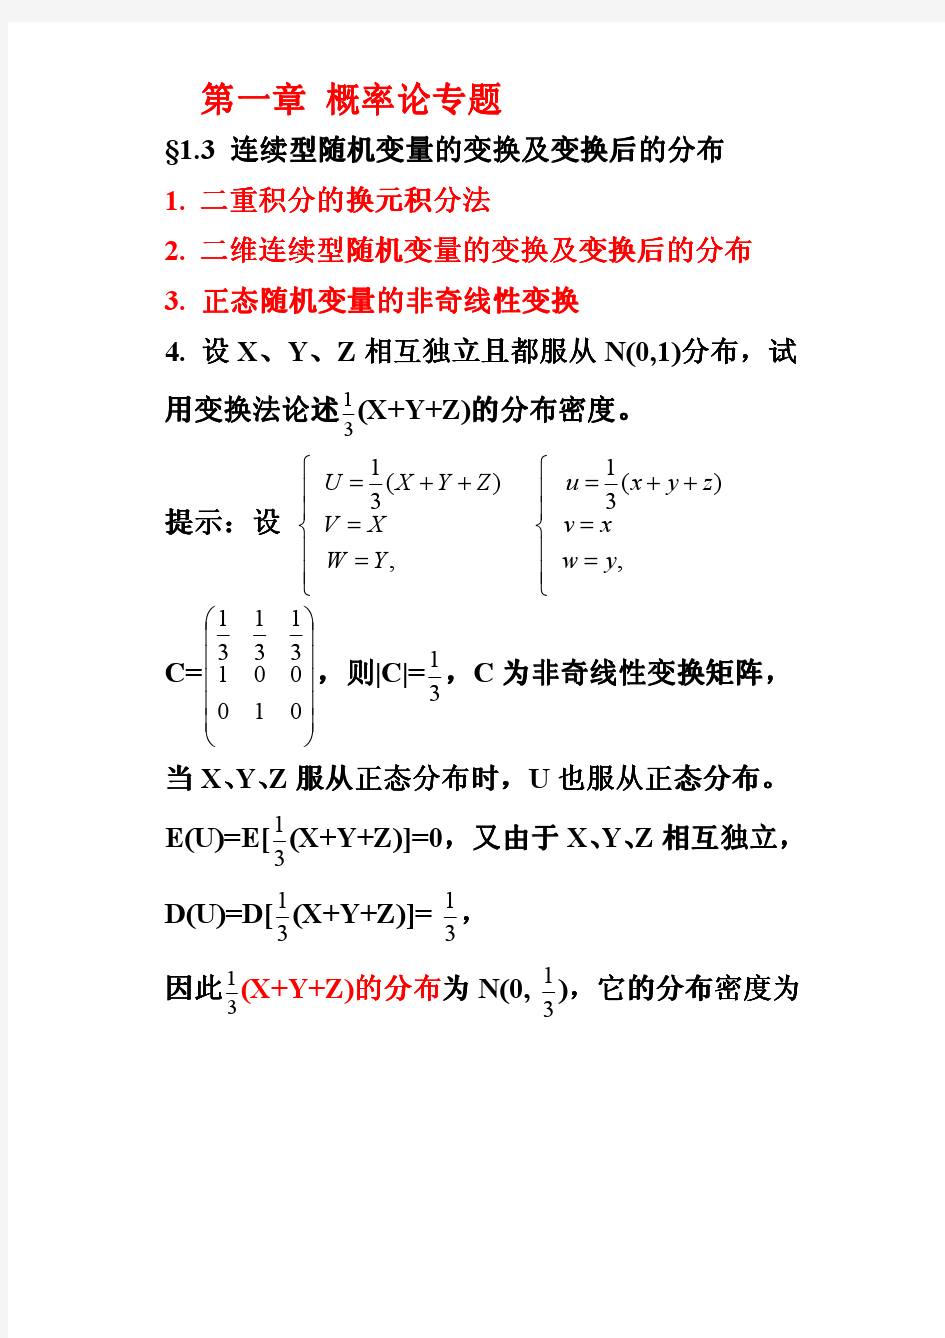 华中农业大学概率论与数理统计讲课提纲三